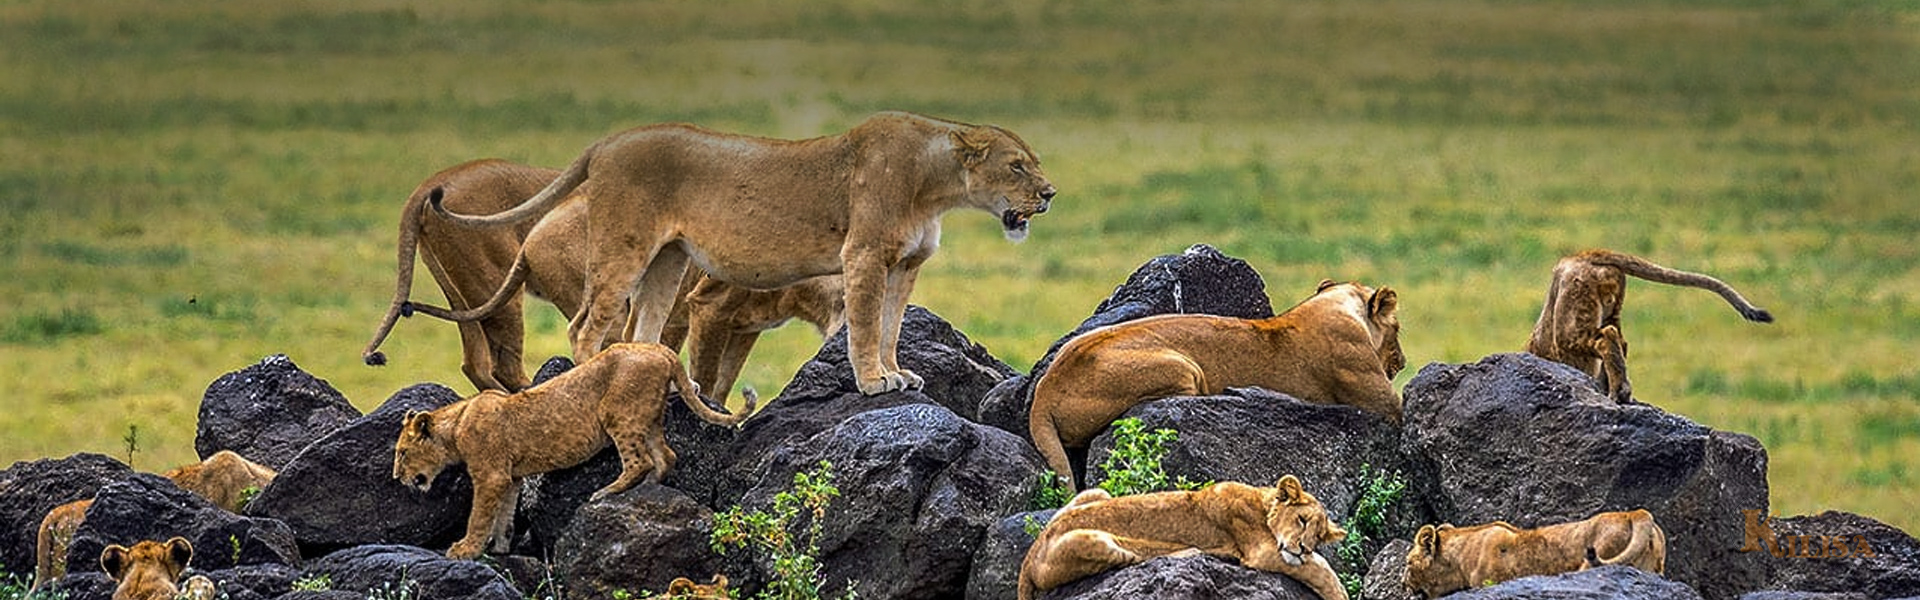 African safaris in Tanzania